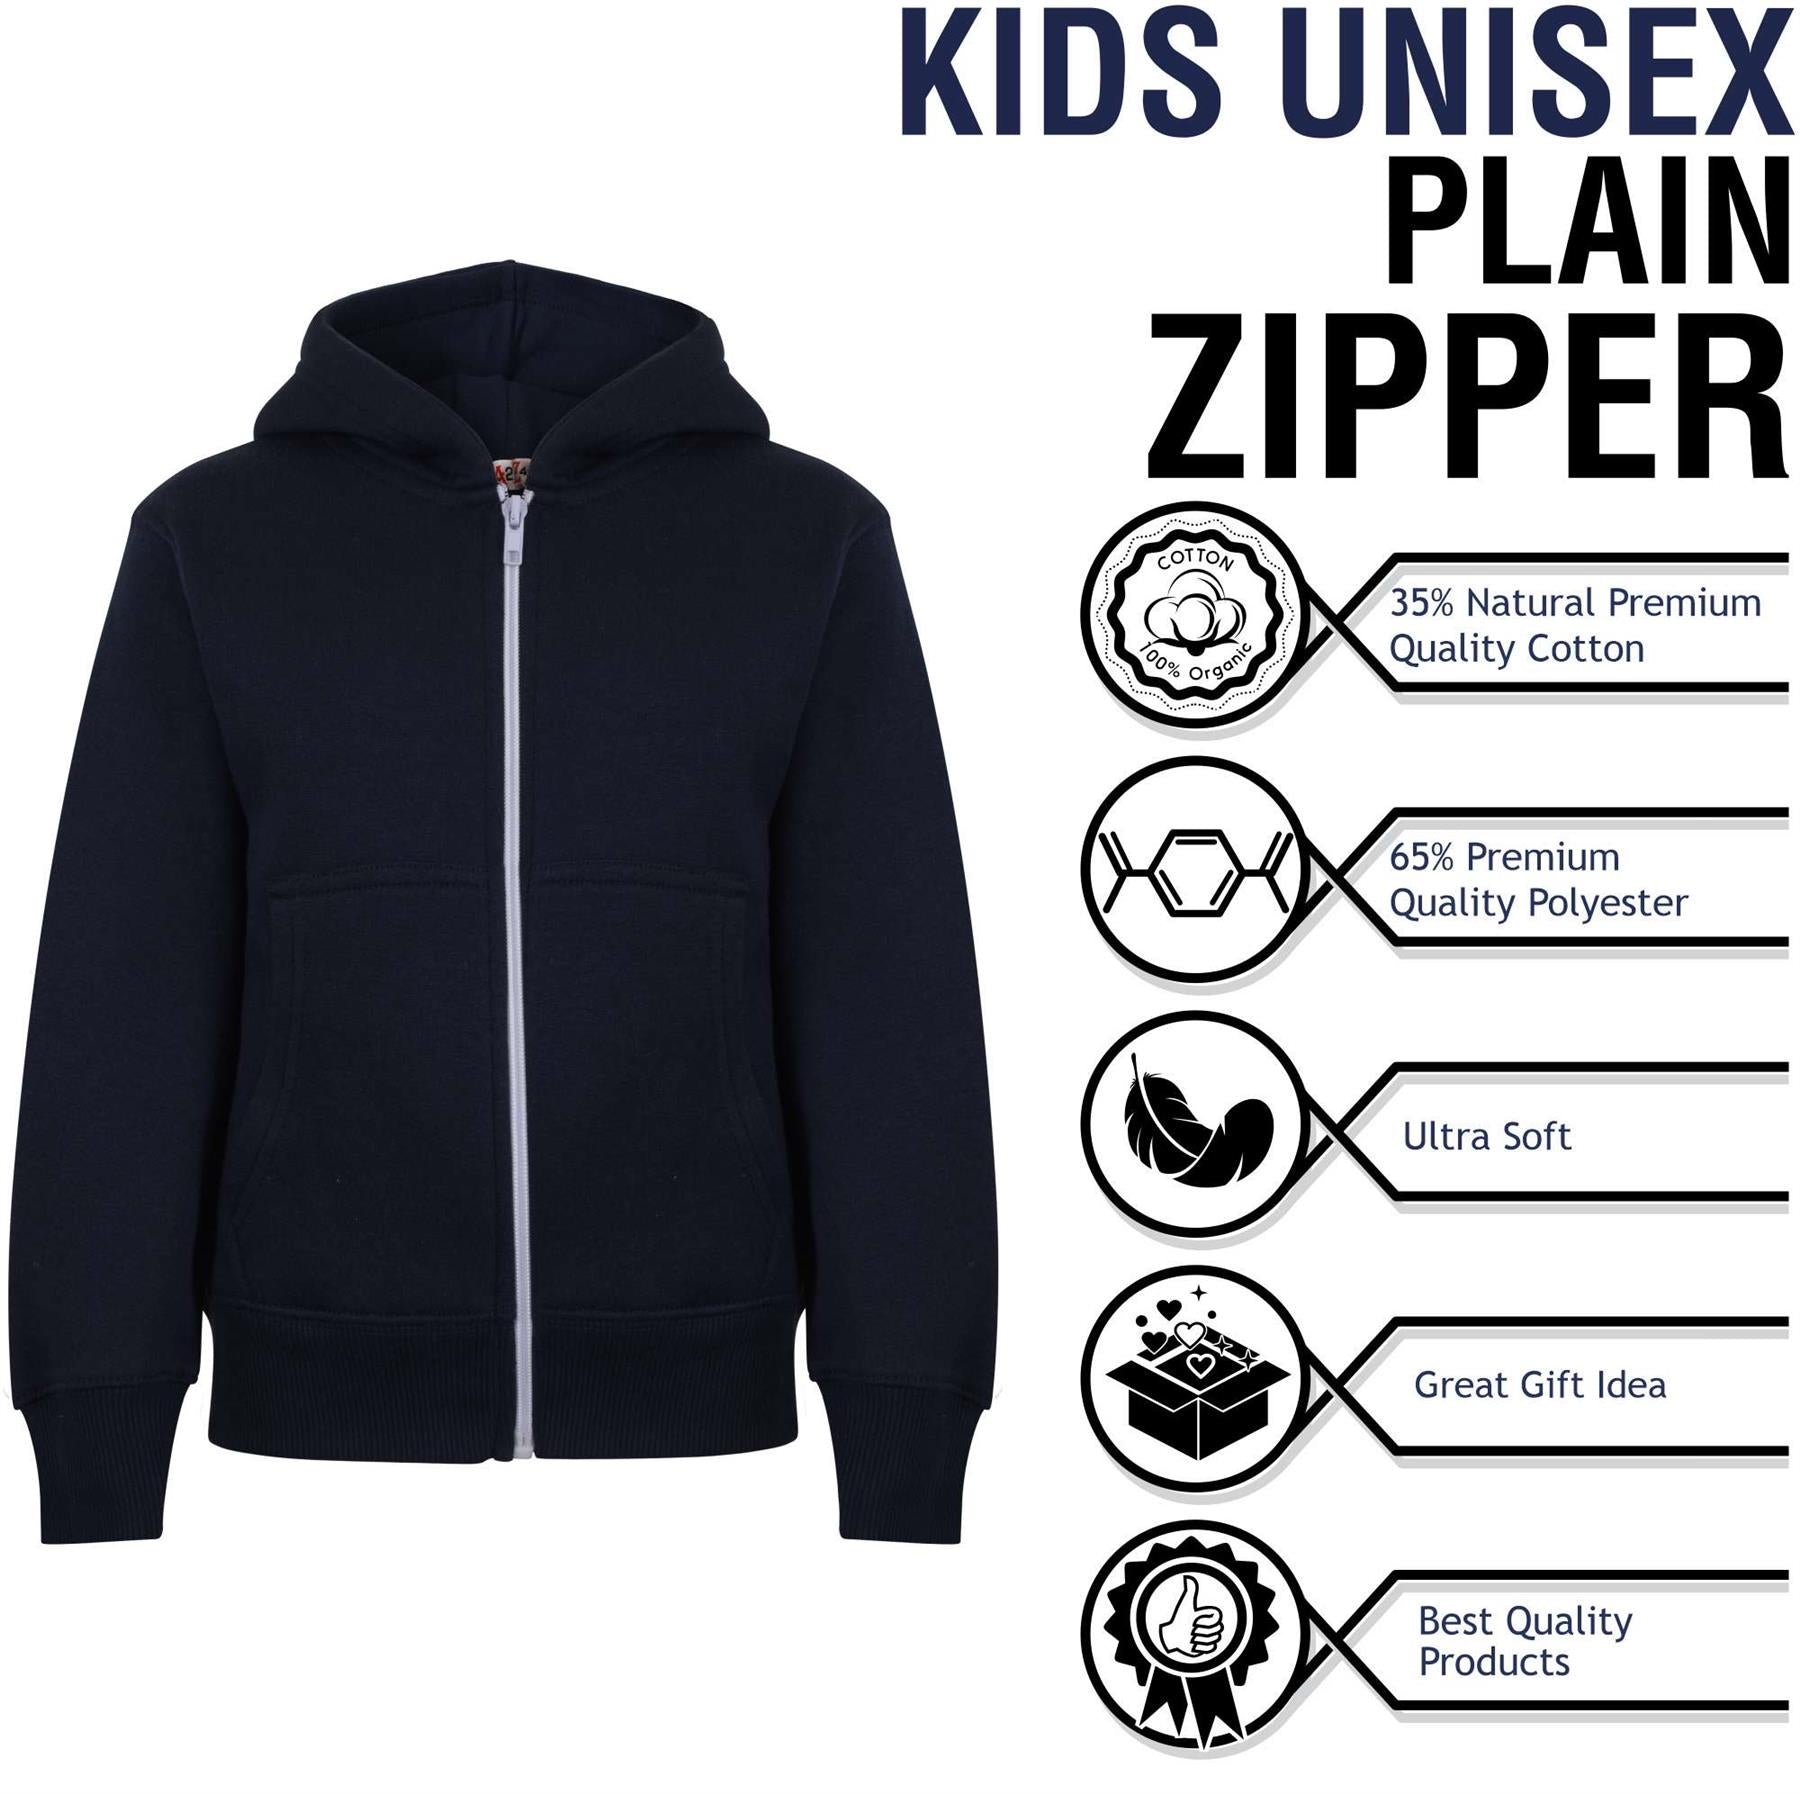 Kids Girls Boys Plain Hooded Zipper Jackets